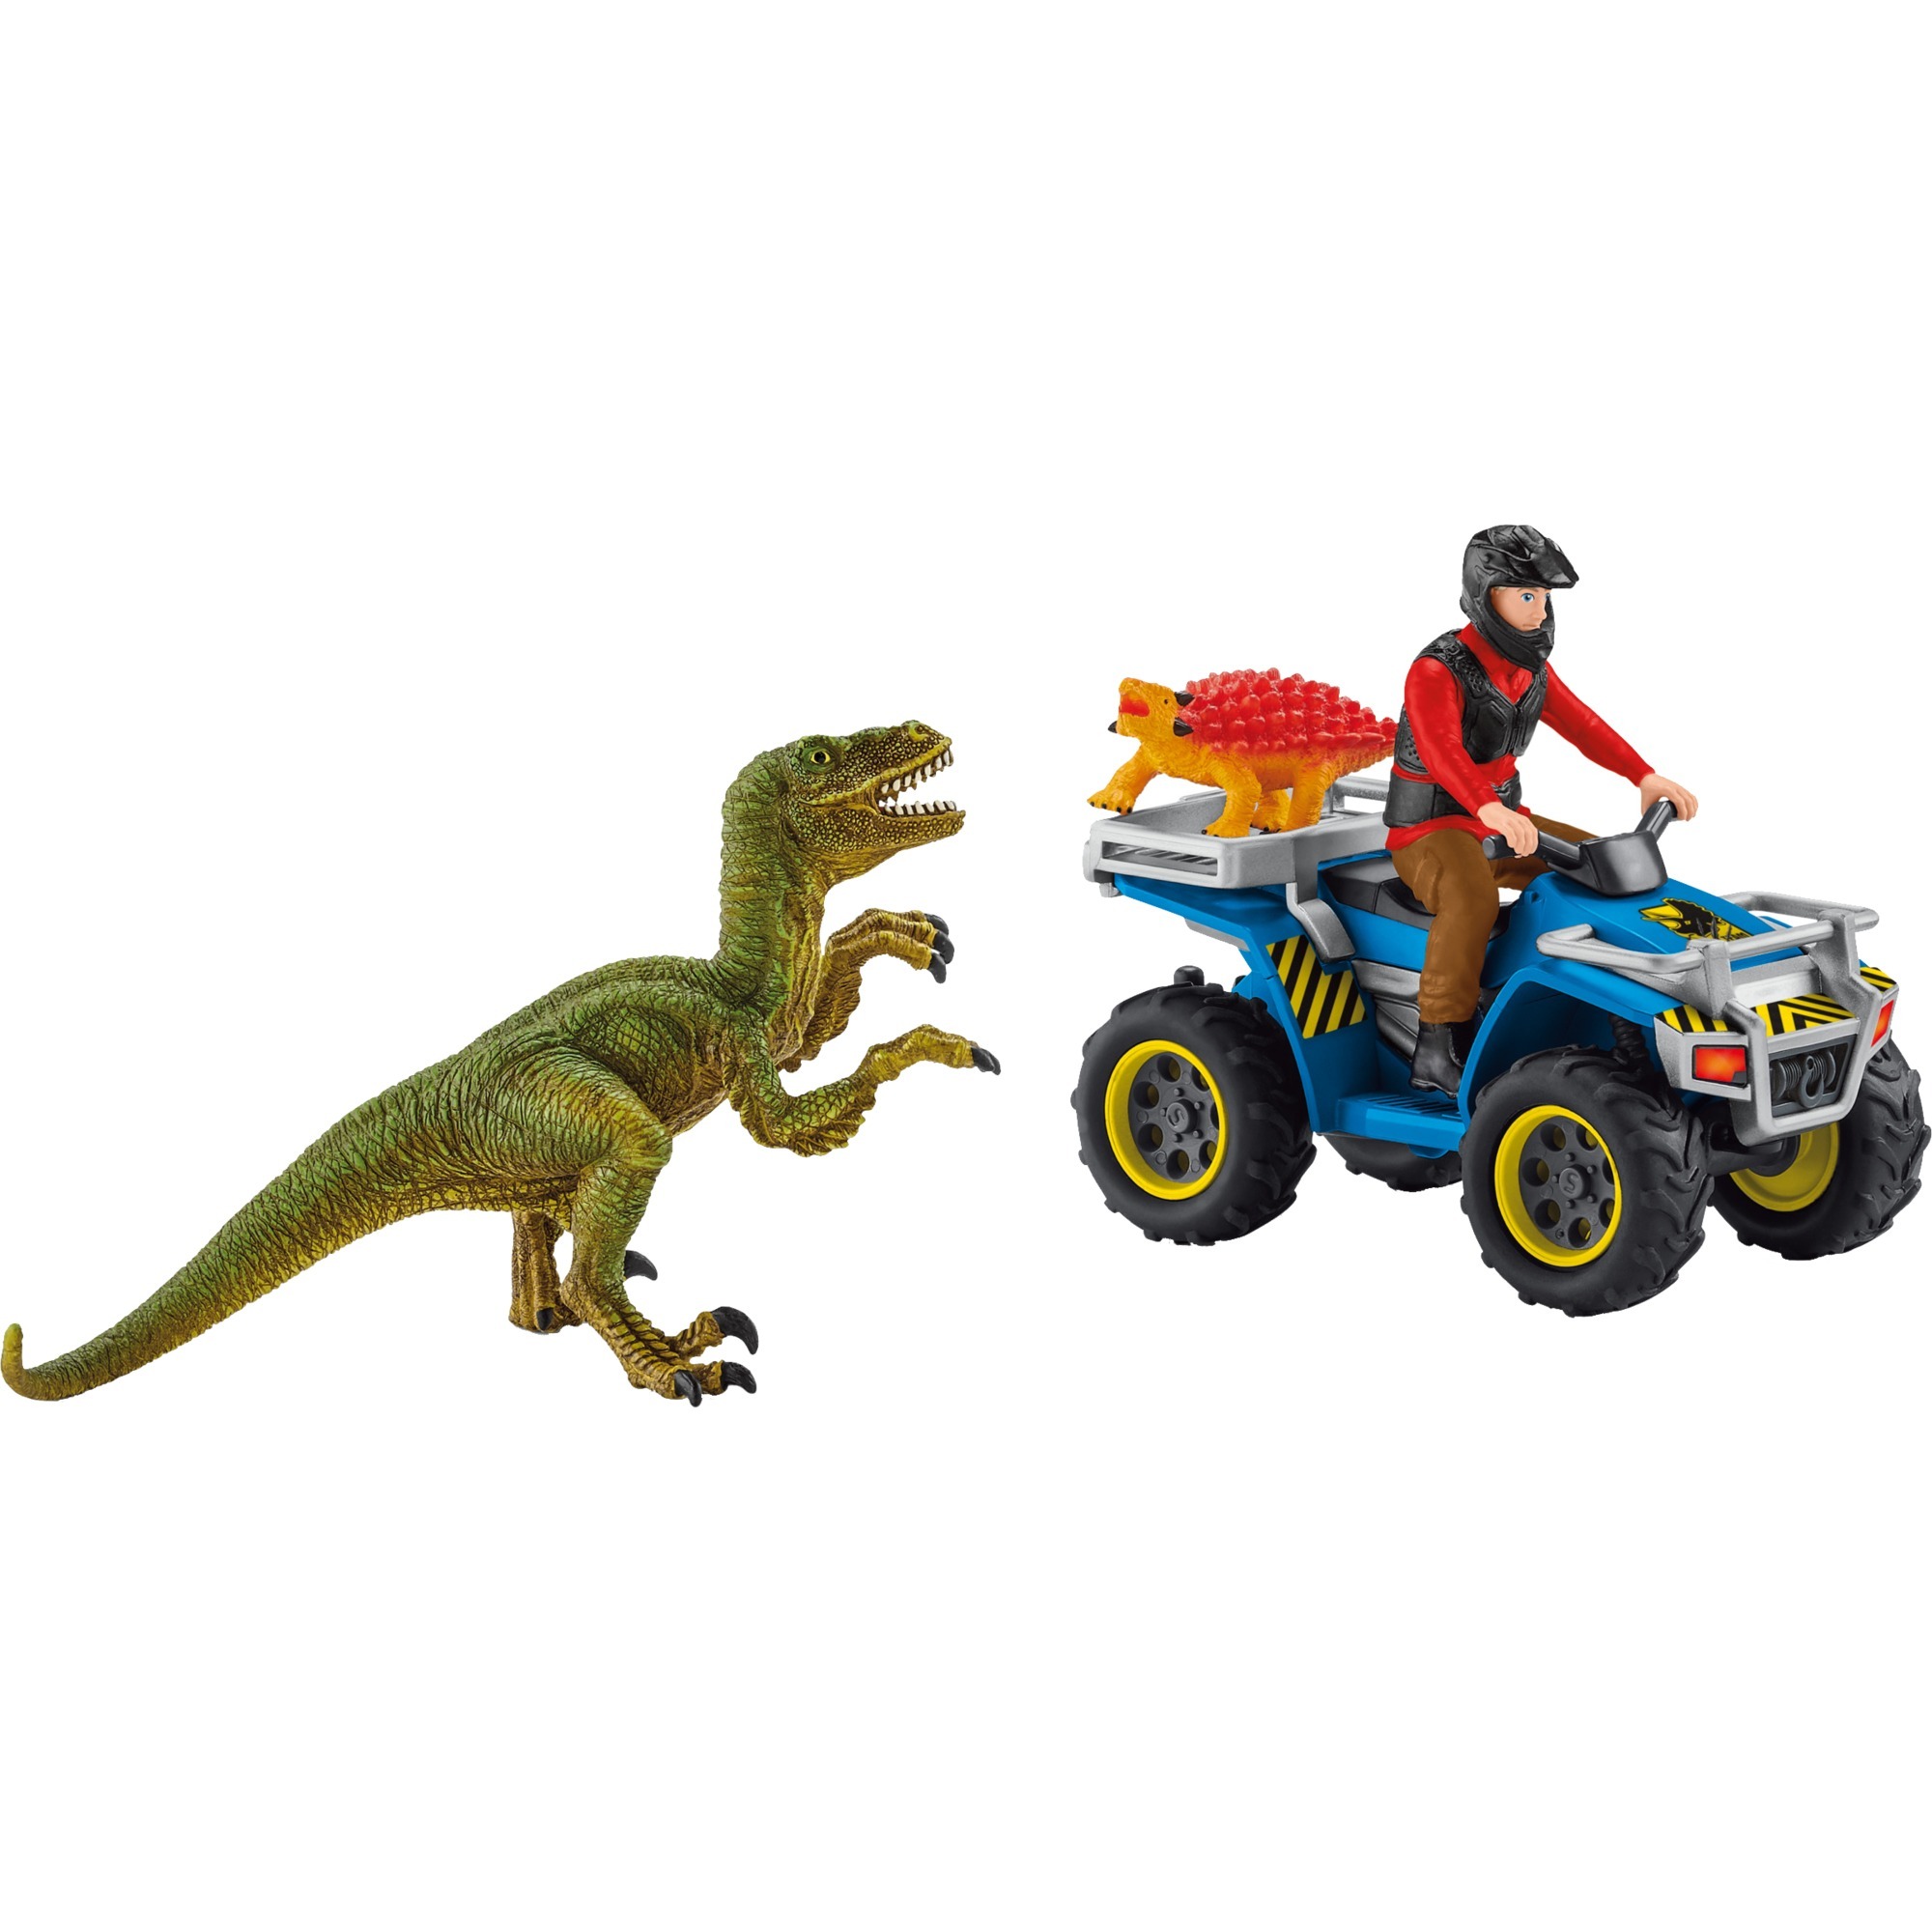 Image of Alternate - Dinosaurs Flucht auf Quad vor Velociraptor, Spielfigur online einkaufen bei Alternate